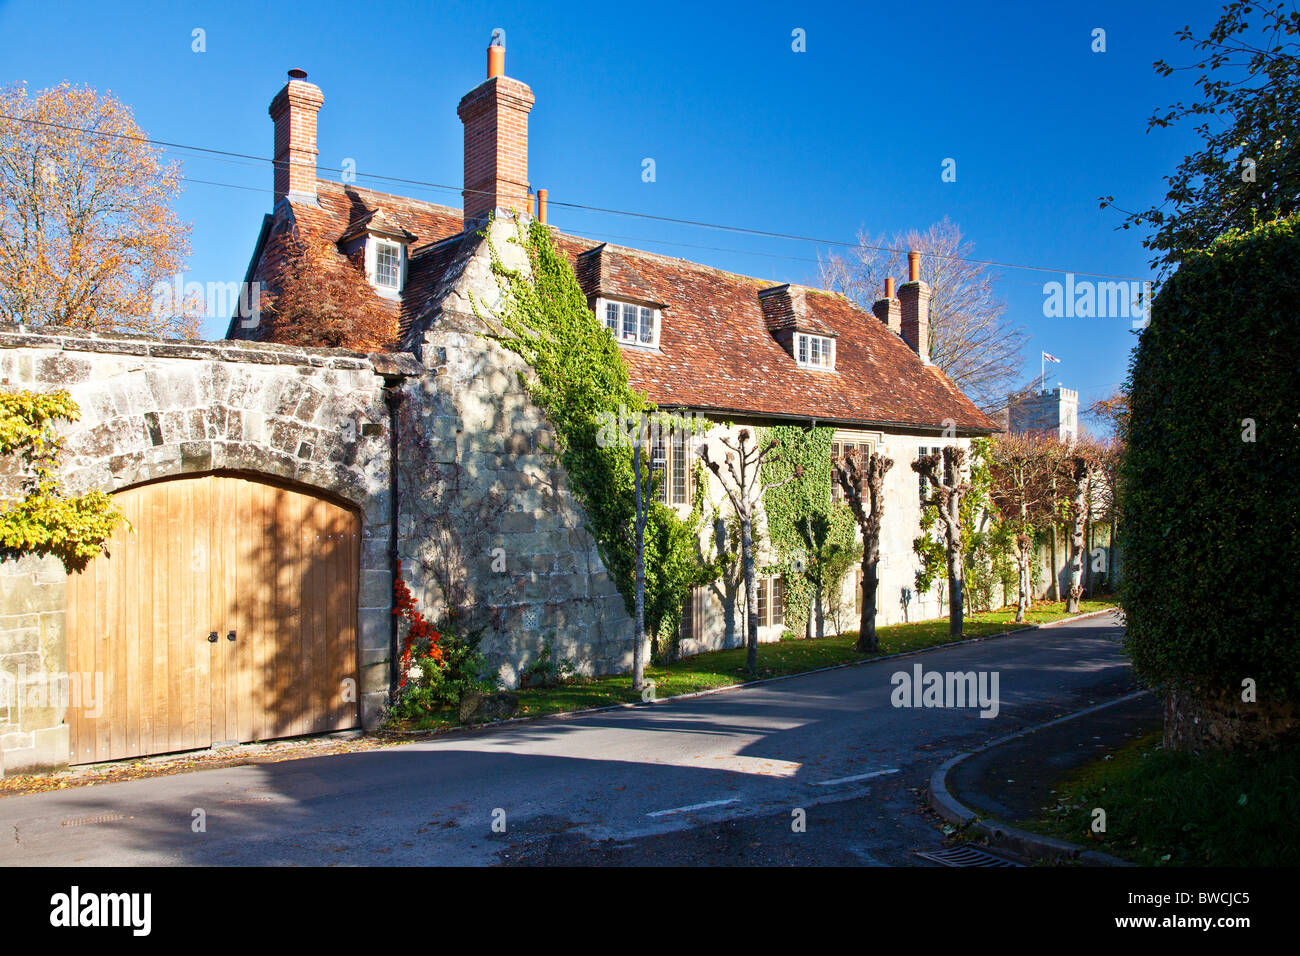 Una casa de piedra de estilo típico inglés, la antigua casa rectoral, en la aldea de amplia Chalke Wiltshire, Inglaterra, Reino Unido. Foto de stock